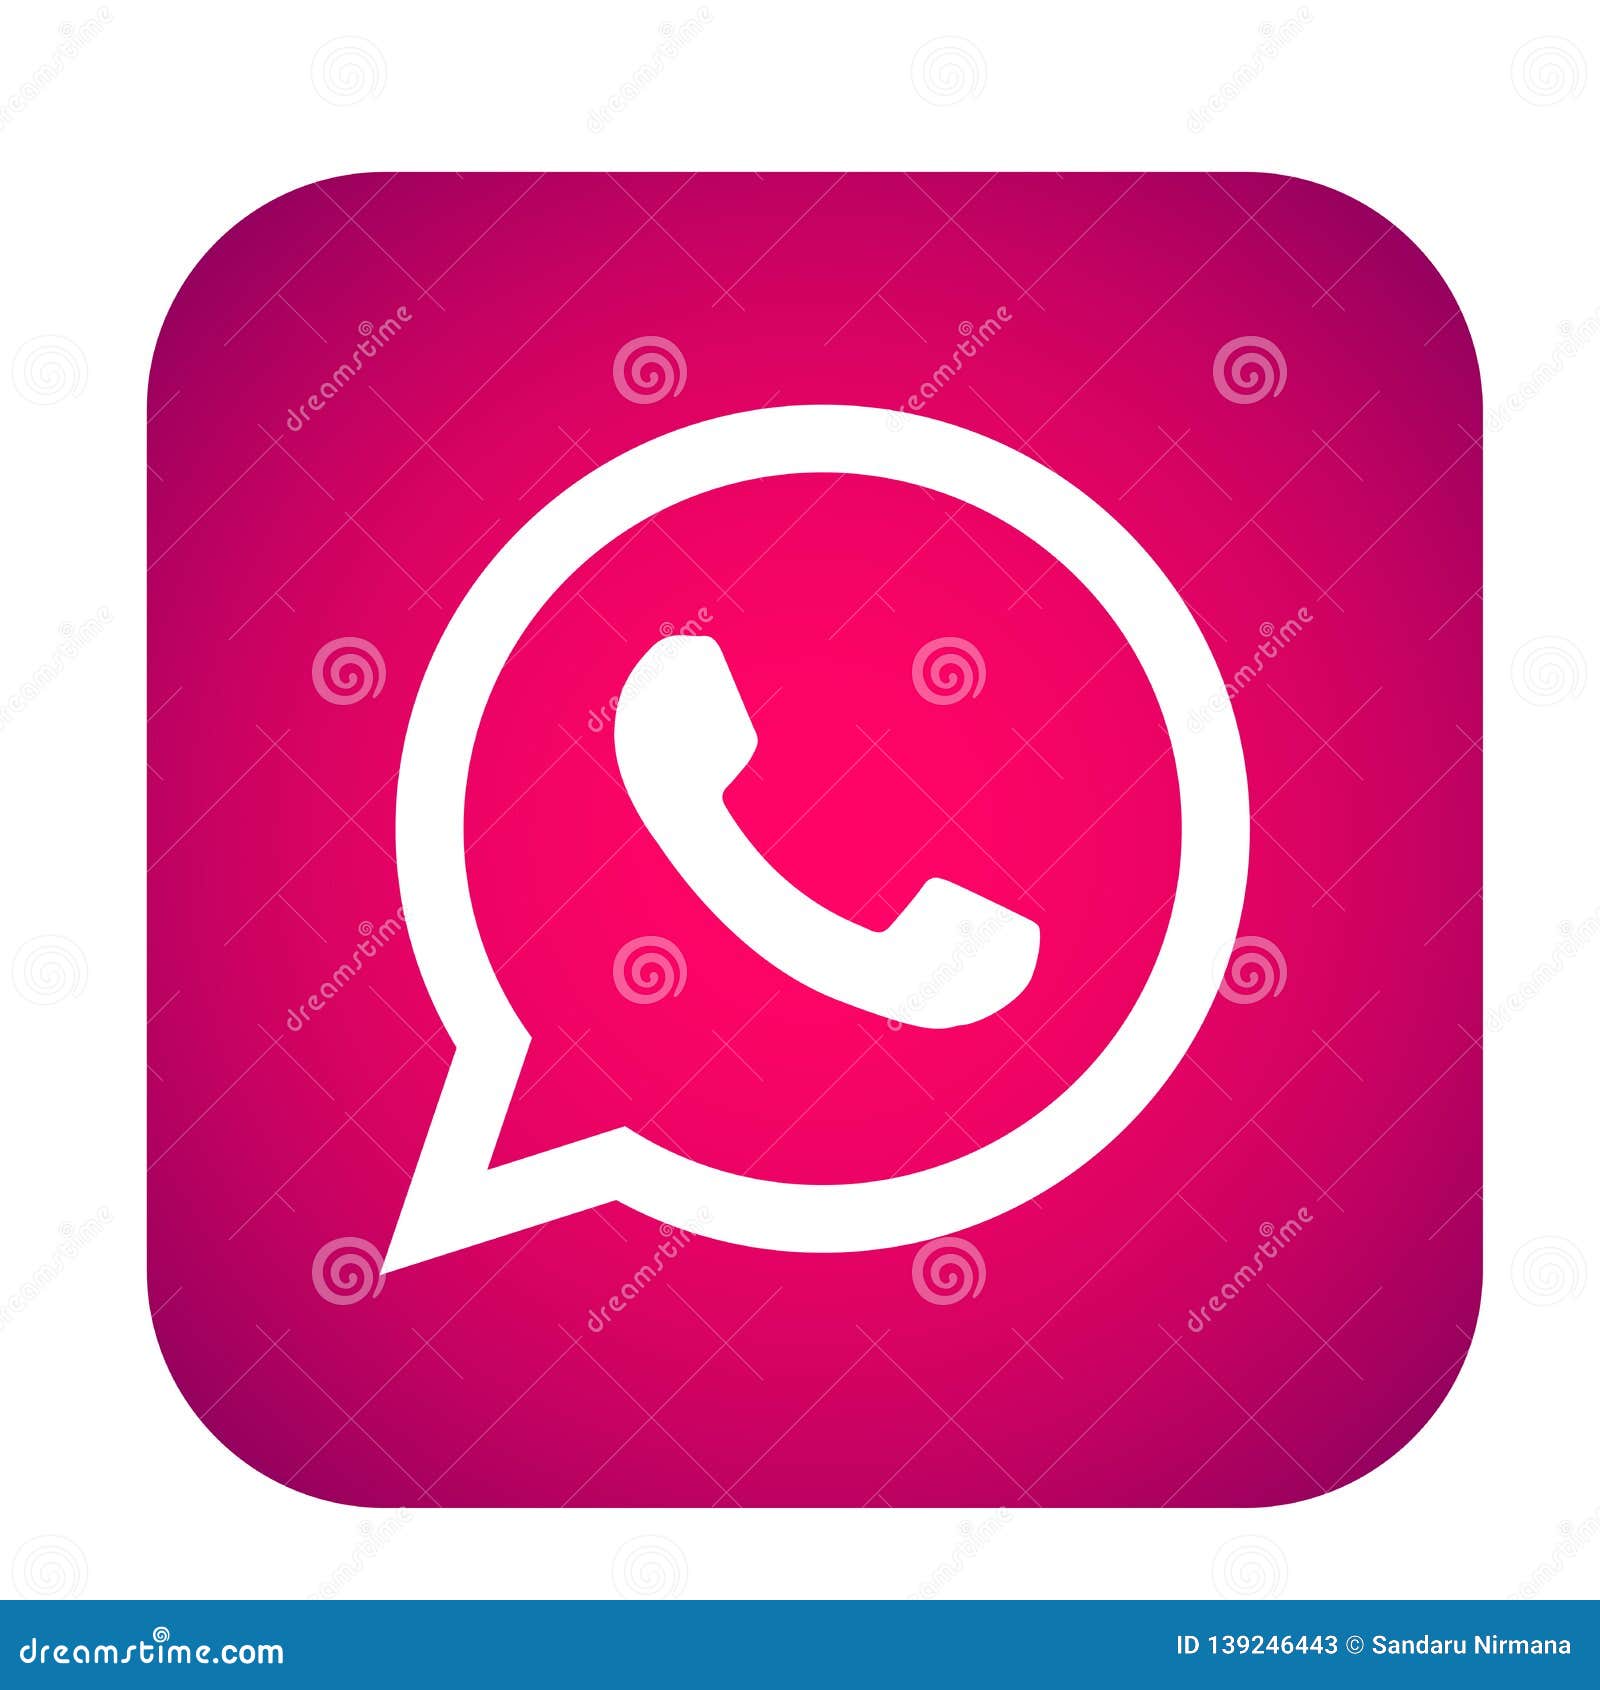 Biểu tượng đăng nhập WhatsApp trên nền trắng và hồng cho ứng dụng di động không chỉ đem lại cảm giác mới lạ và độc đáo, thành công trong việc thu hút sự quan tâm của người dùng. Hơn nữa, tính năng đăng nhập nhanh và dễ dàng giúp bạn luôn tiếp cận được đầy đủ các tin nhắn và kết nối với bạn bè bất cứ lúc nào.